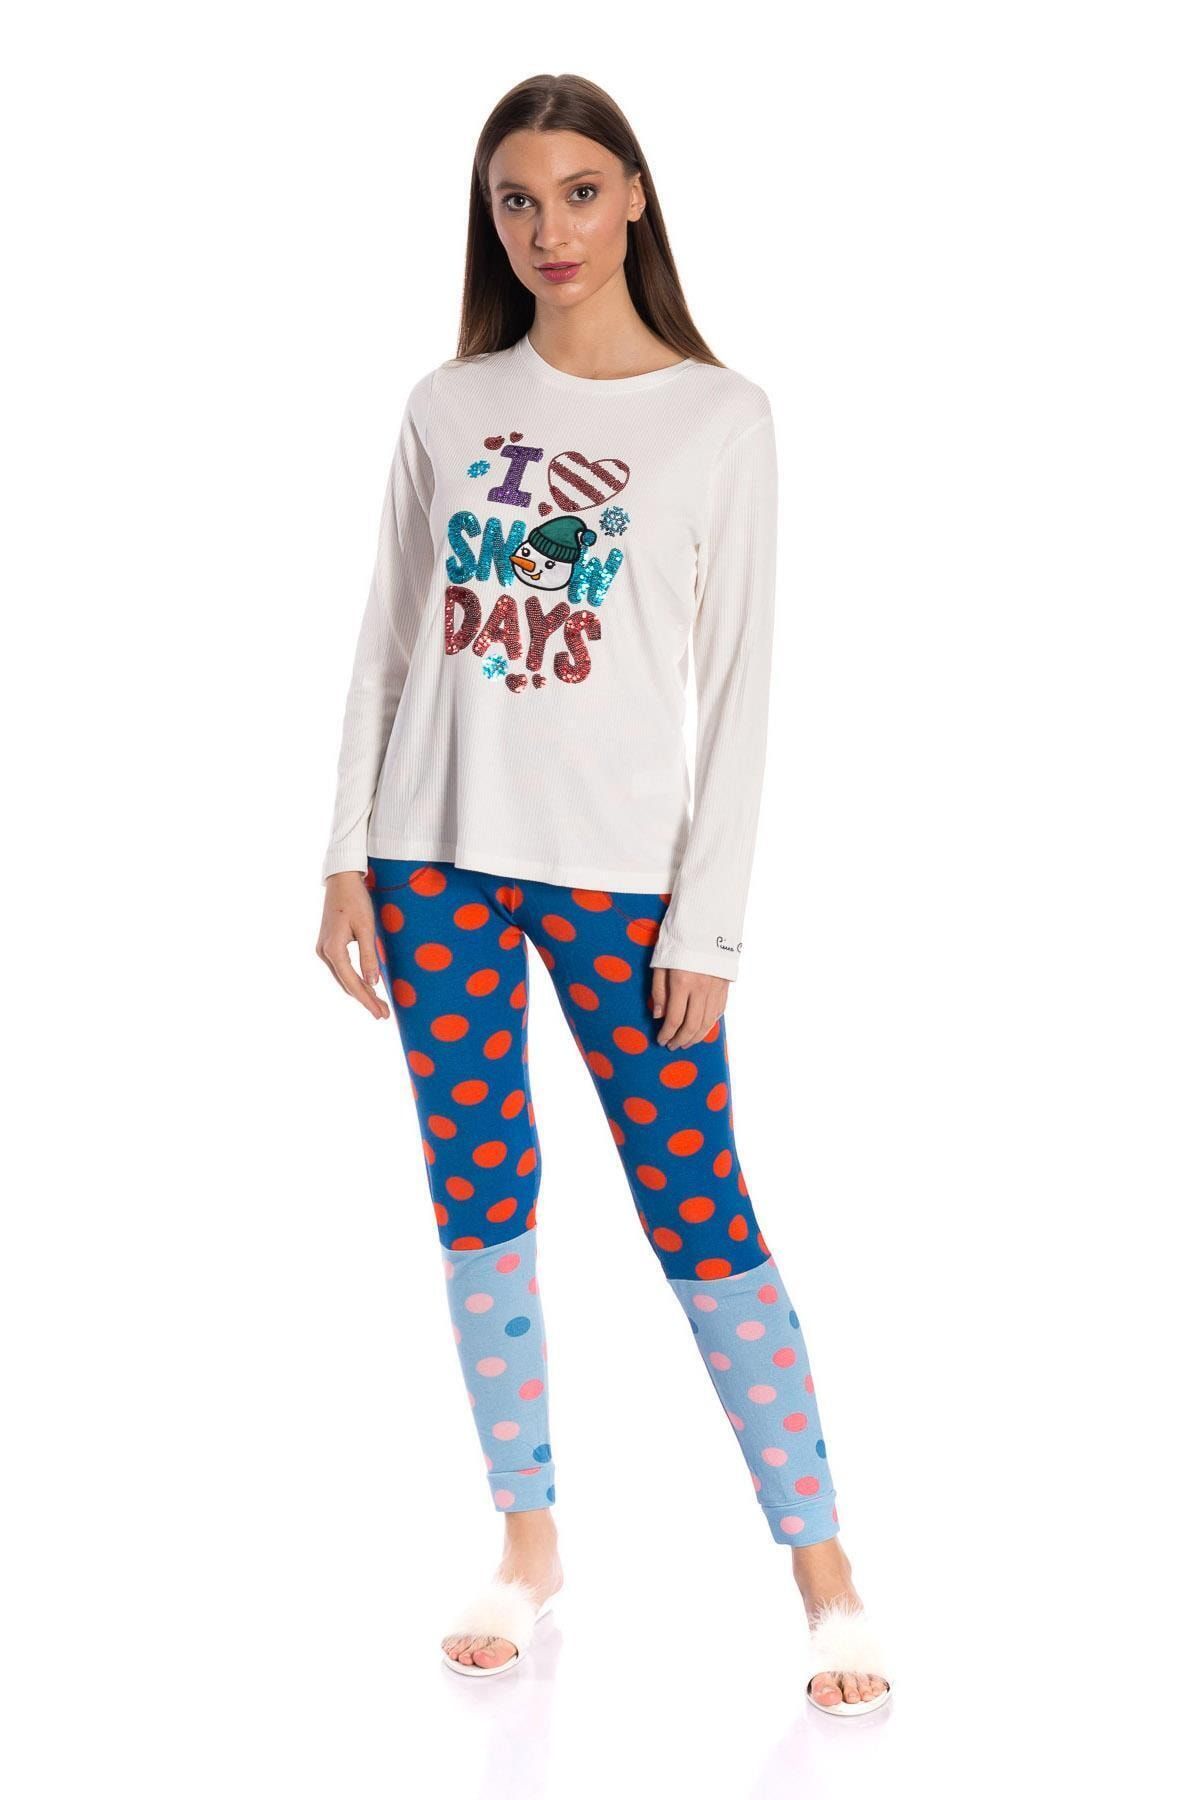 Pierre Cardin Kadın İkili Kardan Adam Desenli Pijama Takımı